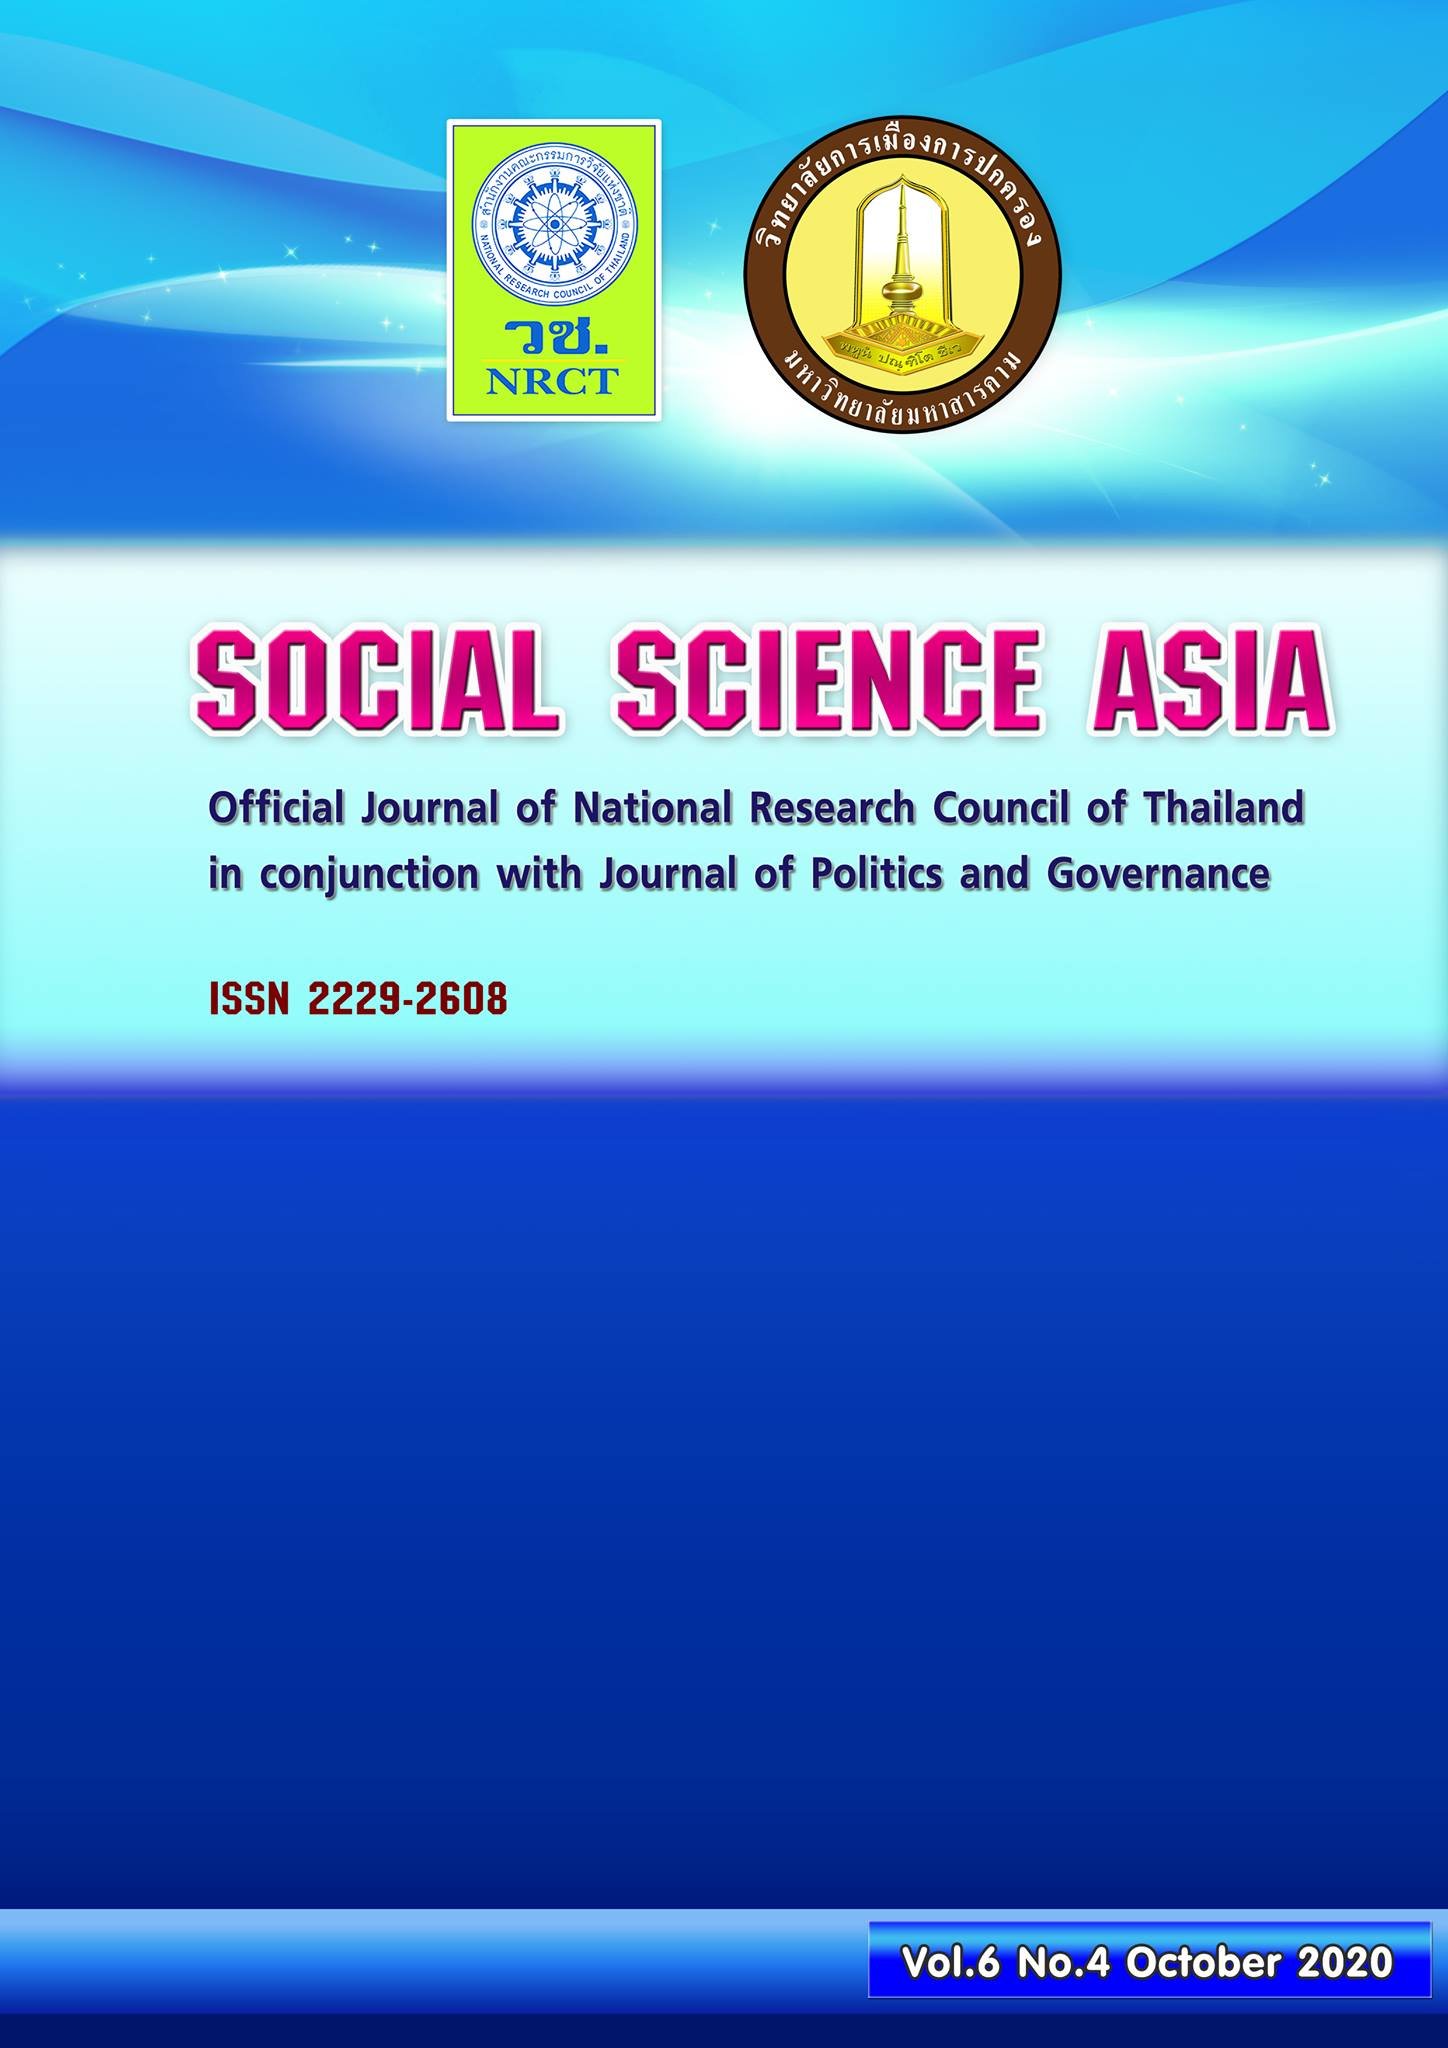 ทุนสนับสนุนการจัดทำวารสารด้านสังคมศาสตร์ ภายใต้ชื่อวารสาร Socal Science Asia